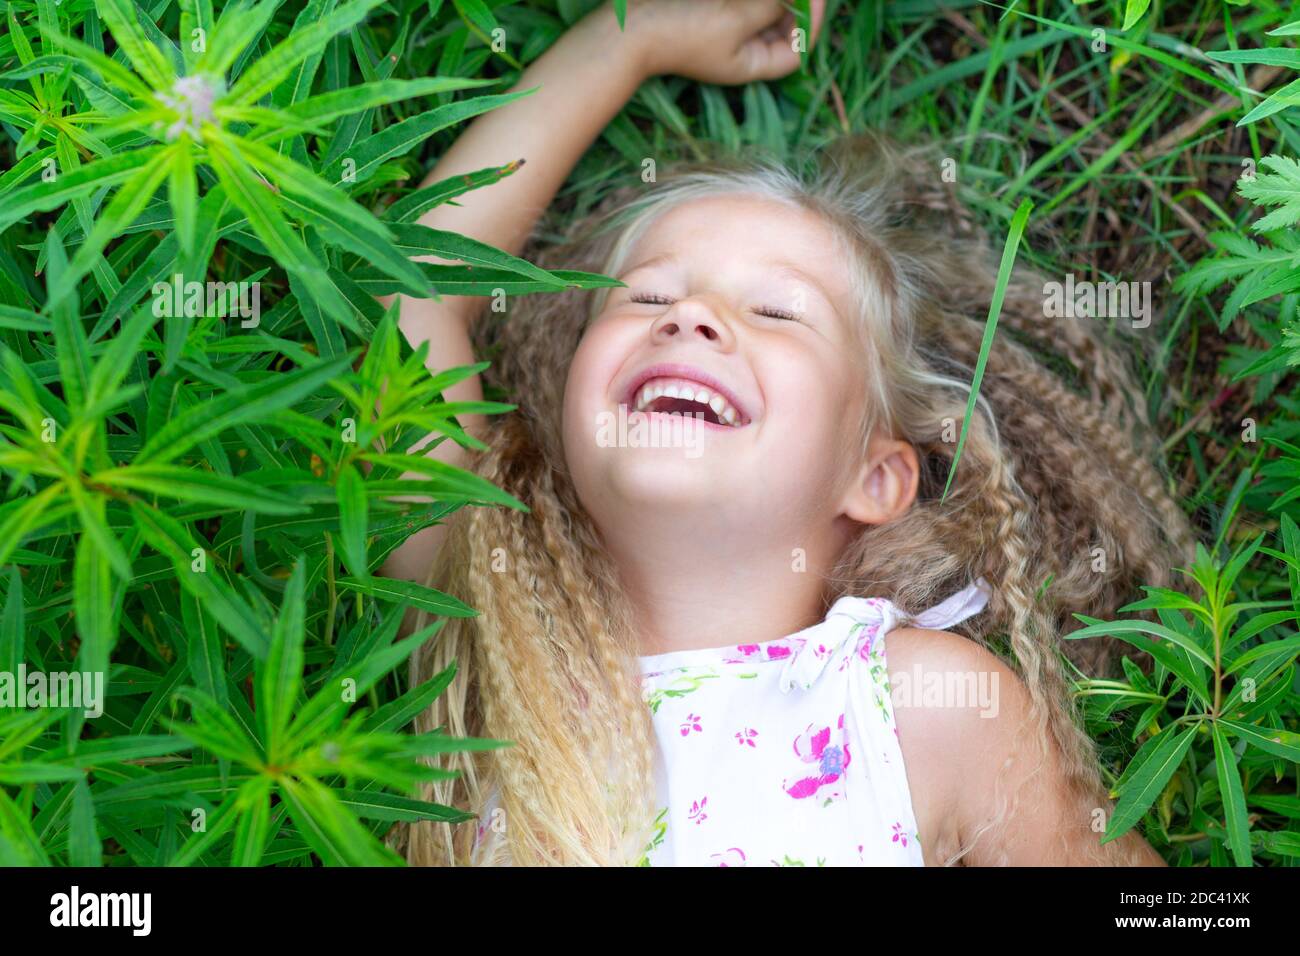 Ein kleines kaukasisches Mädchen mit langen blonden Haaren liegt auf ihrem Rücken im Gras, hob ihre Hand, schloss die Augen, lacht. Kindheit, Glück, Wiedervereinigung Witz Stockfoto